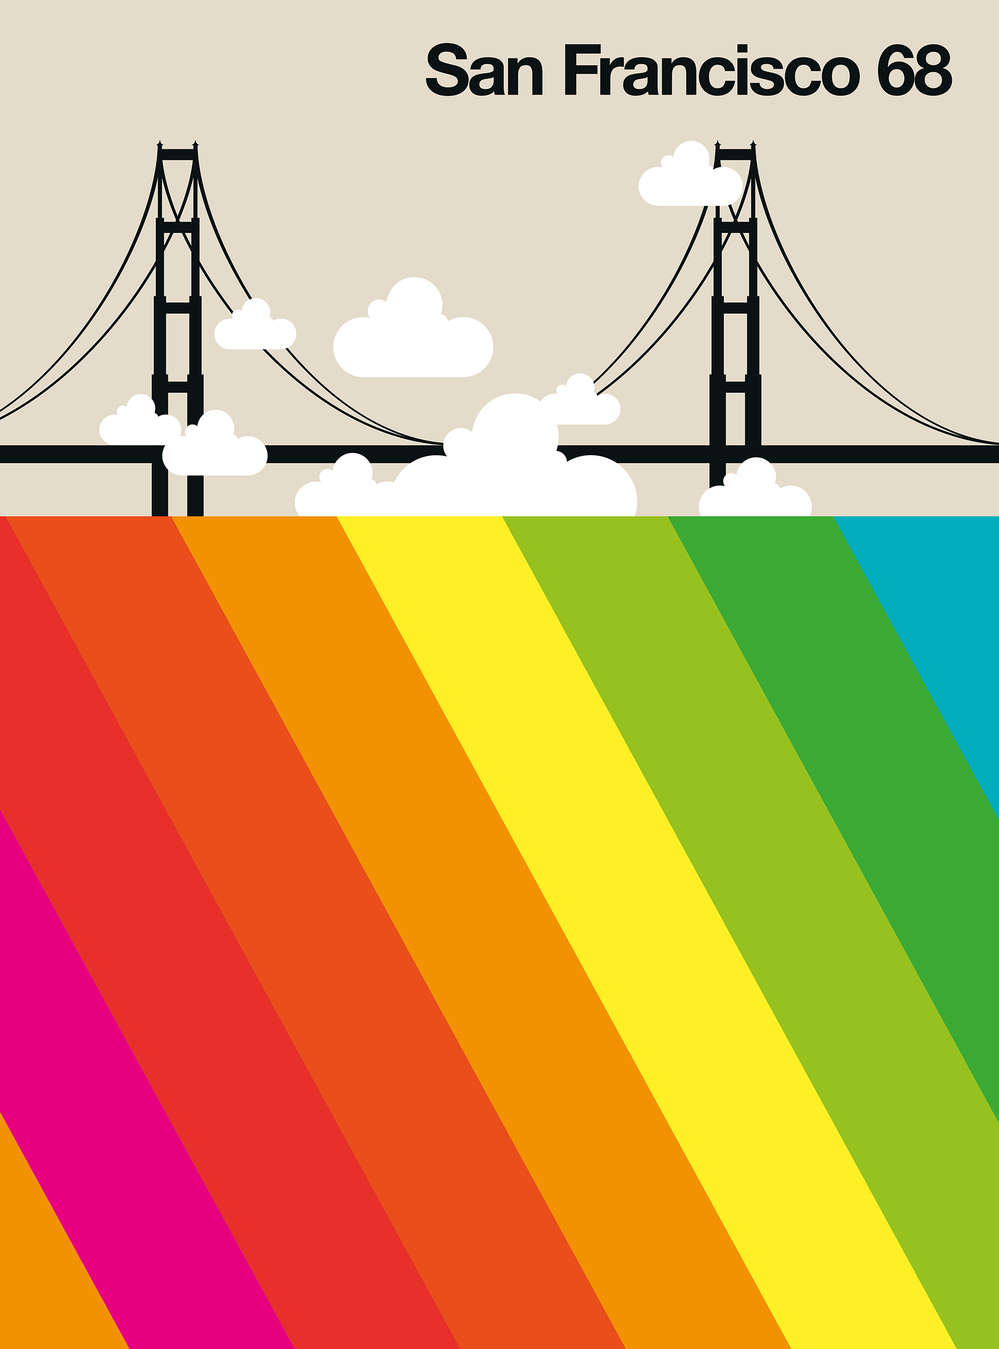             Fotomural San Francisco 68 con el puente Golden Gate y el arco iris
        